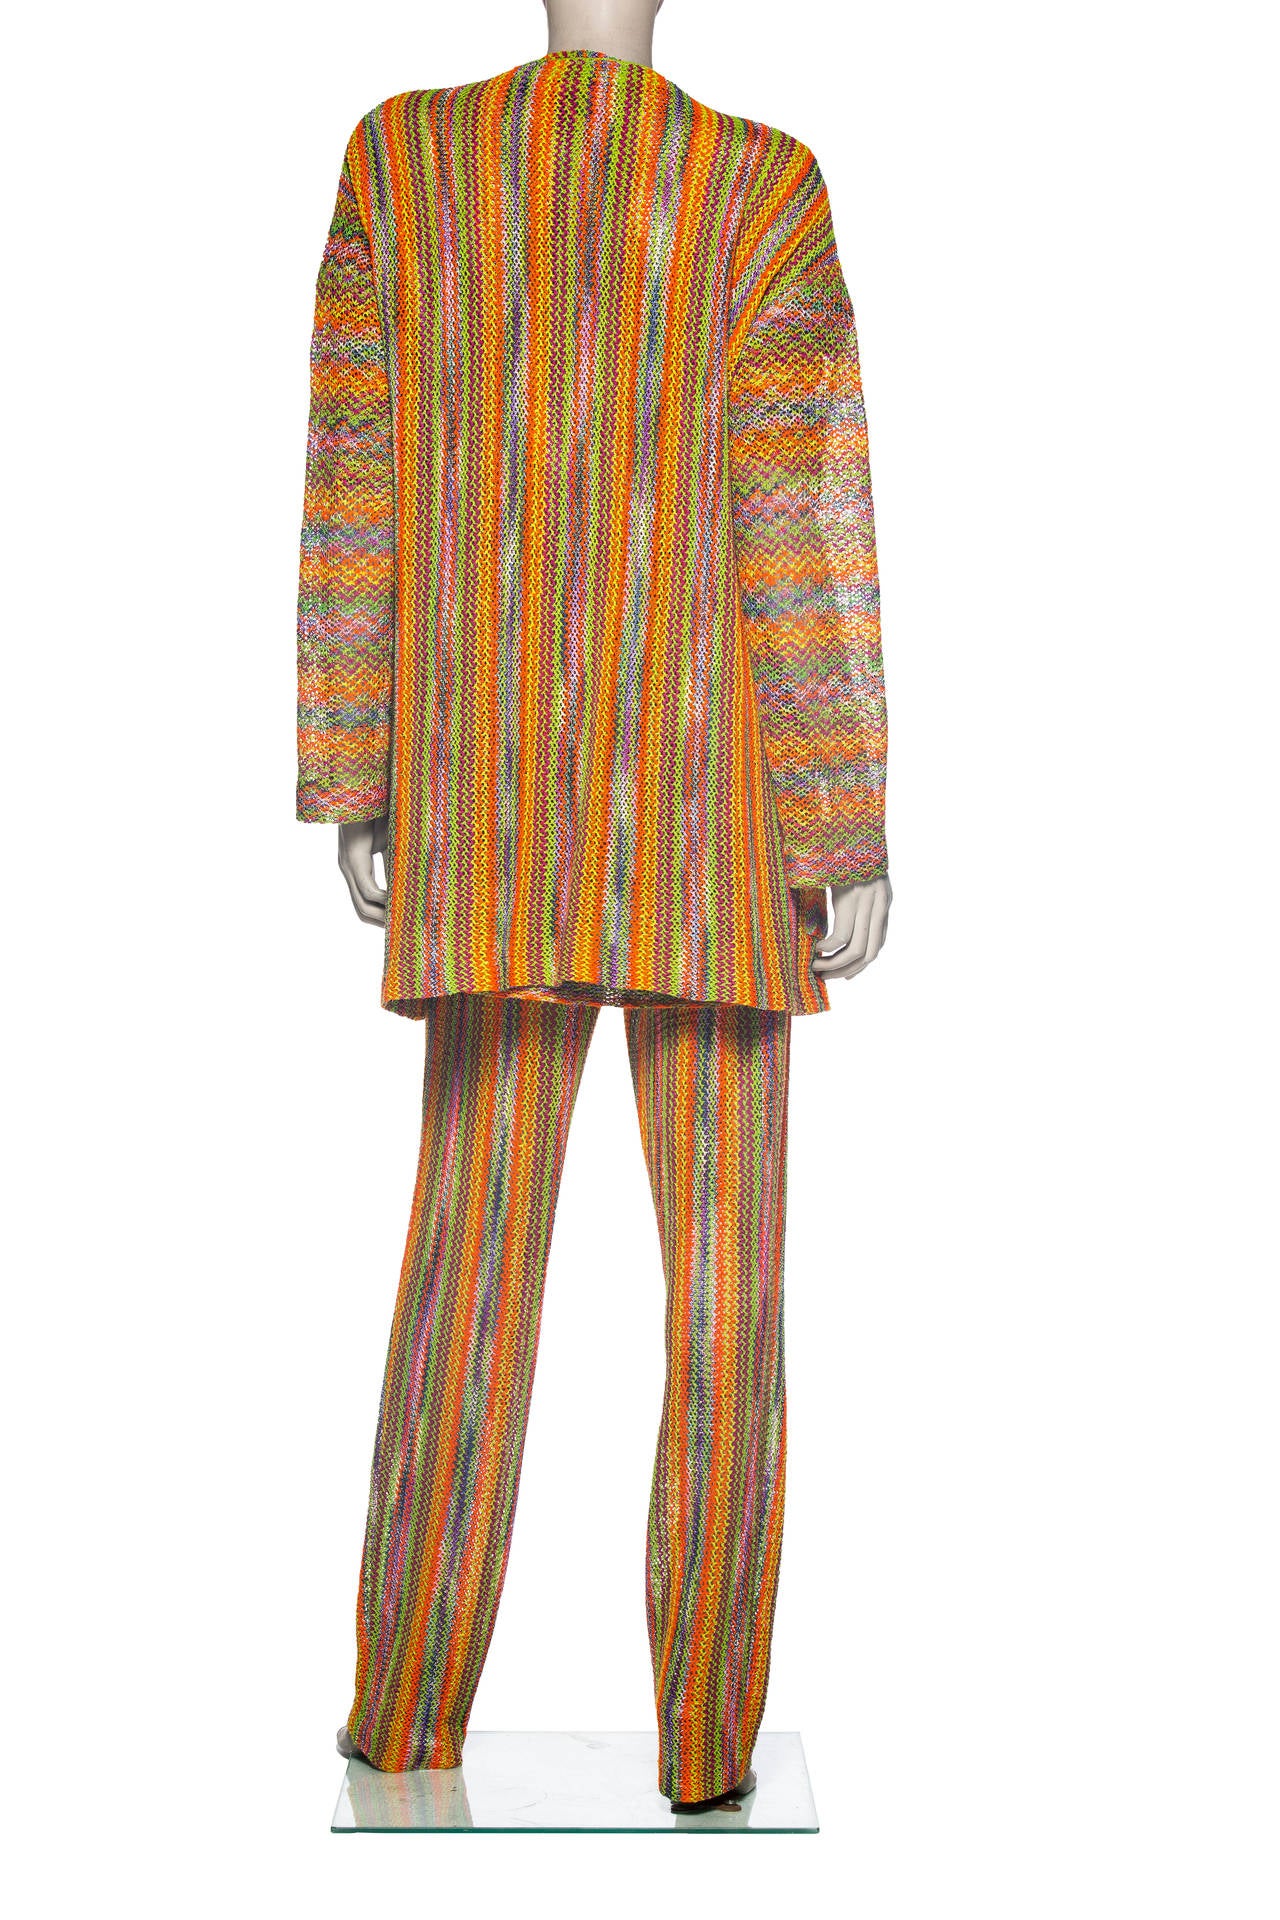 Brown Missoni Rainbow Striped Knit Pant Suit Ensemble, Circa 1970's For Sale